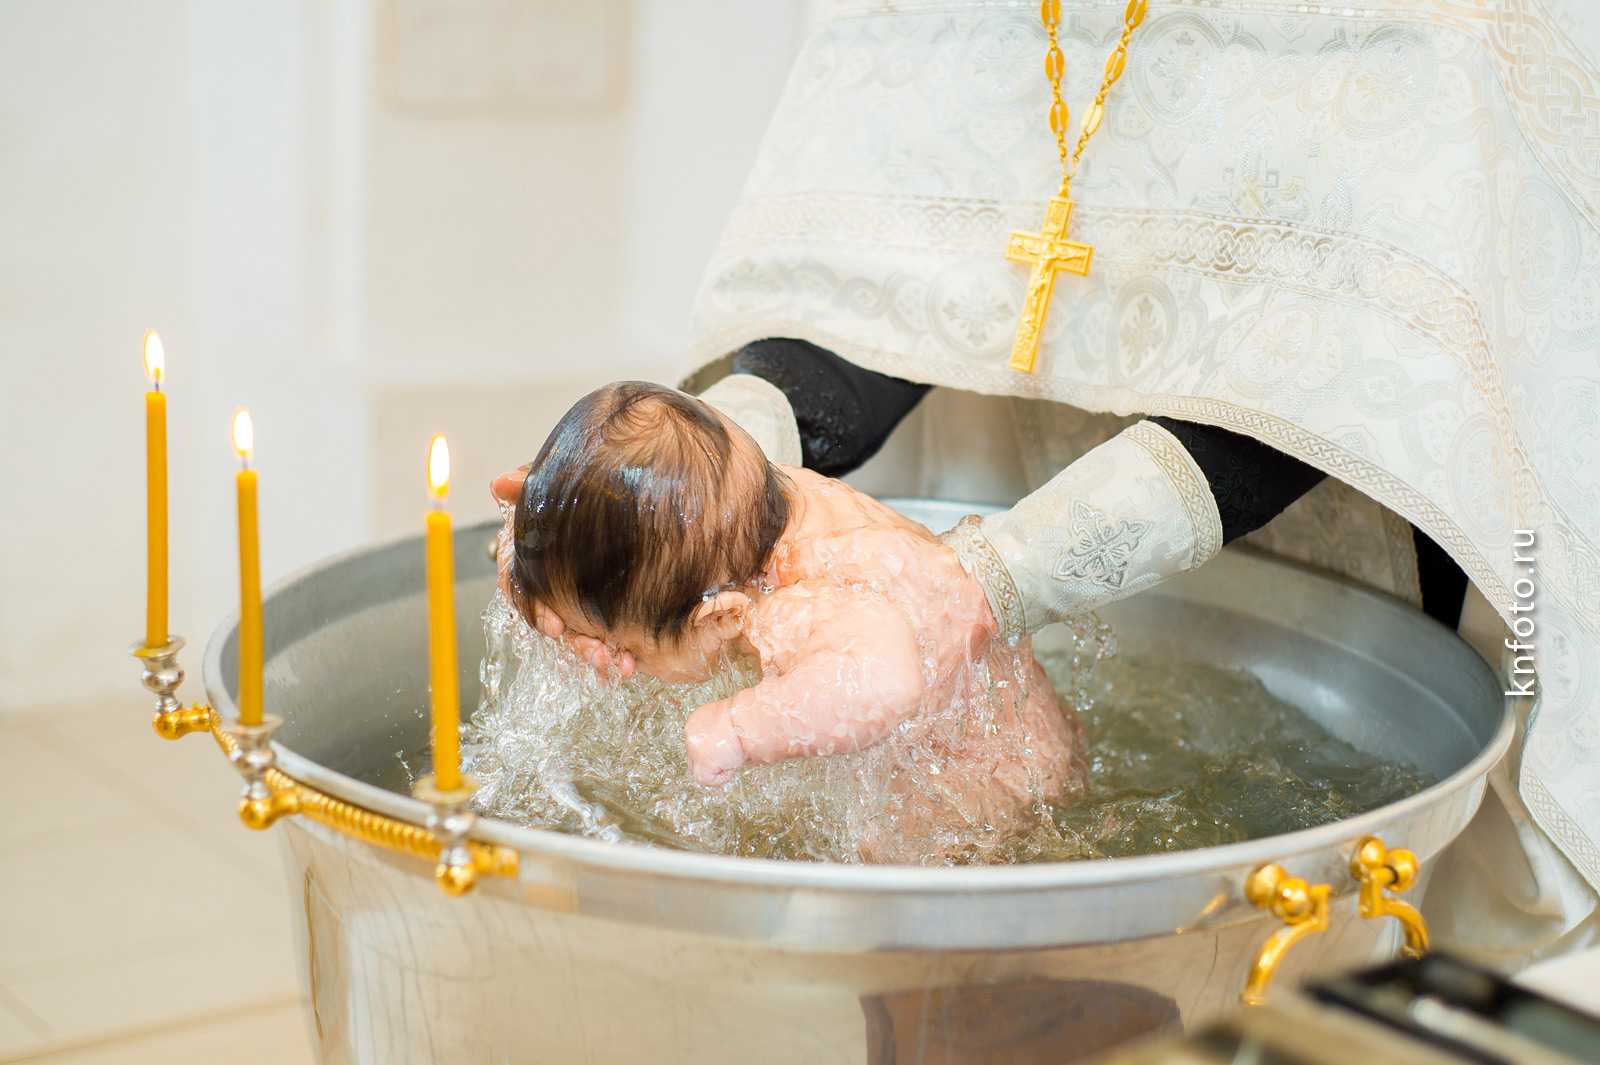 Крещение ребенка: что нужно знать и купить перед таинством